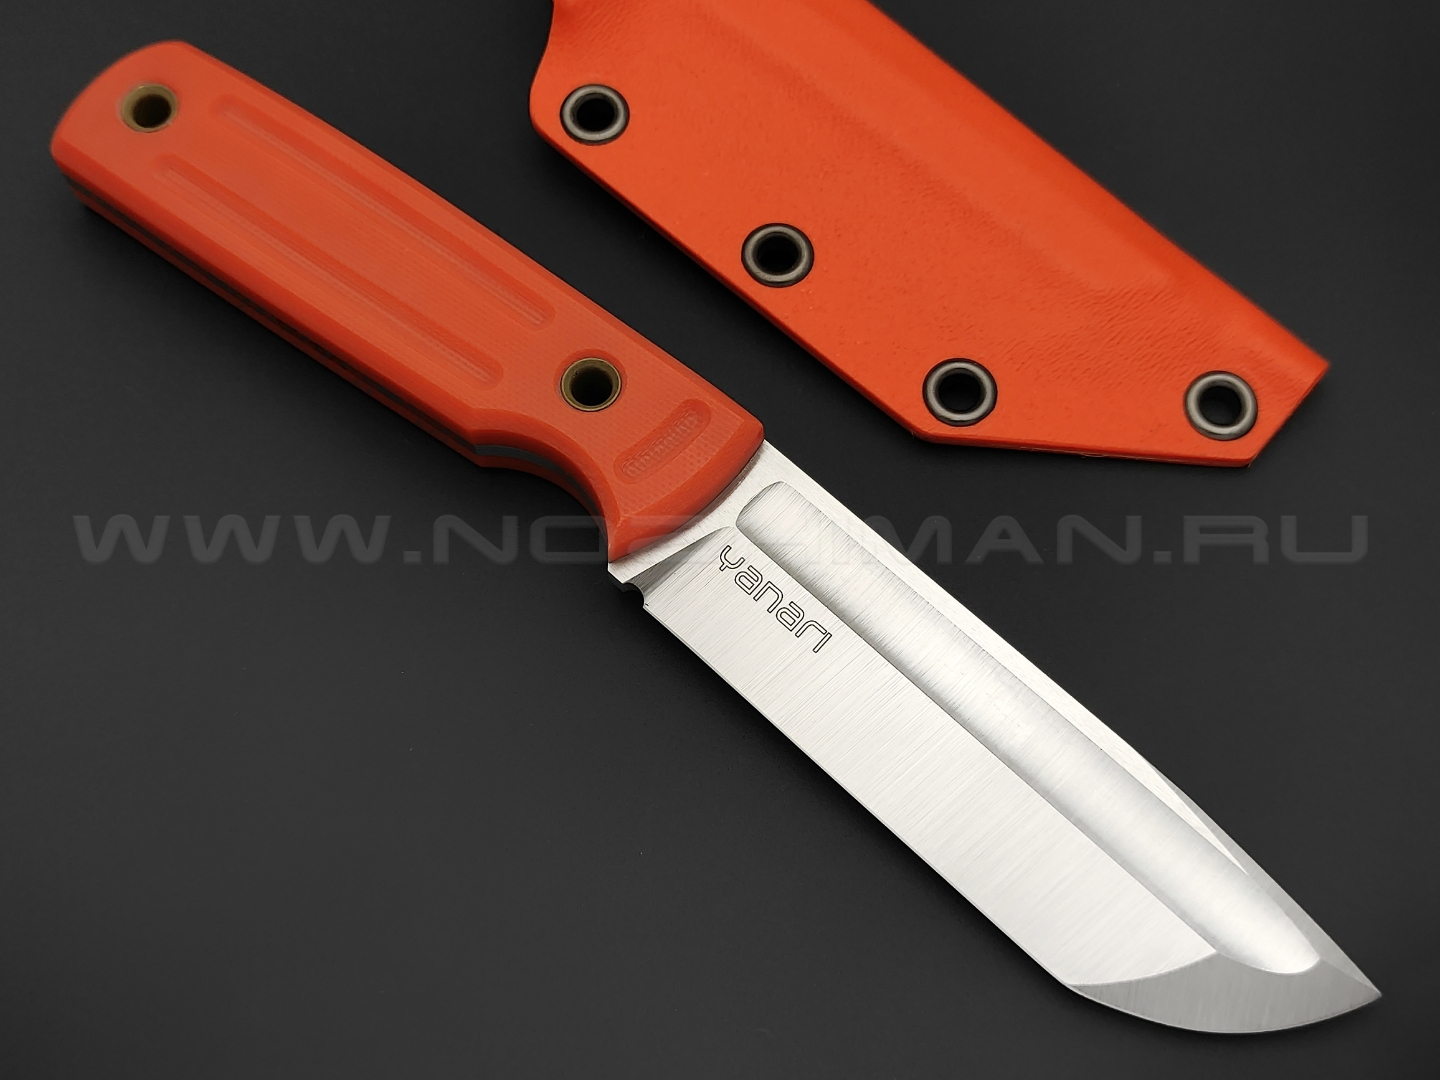 Нож Yanari средний сталь VG-10, рукоять G10 orange, ножны kydex orange